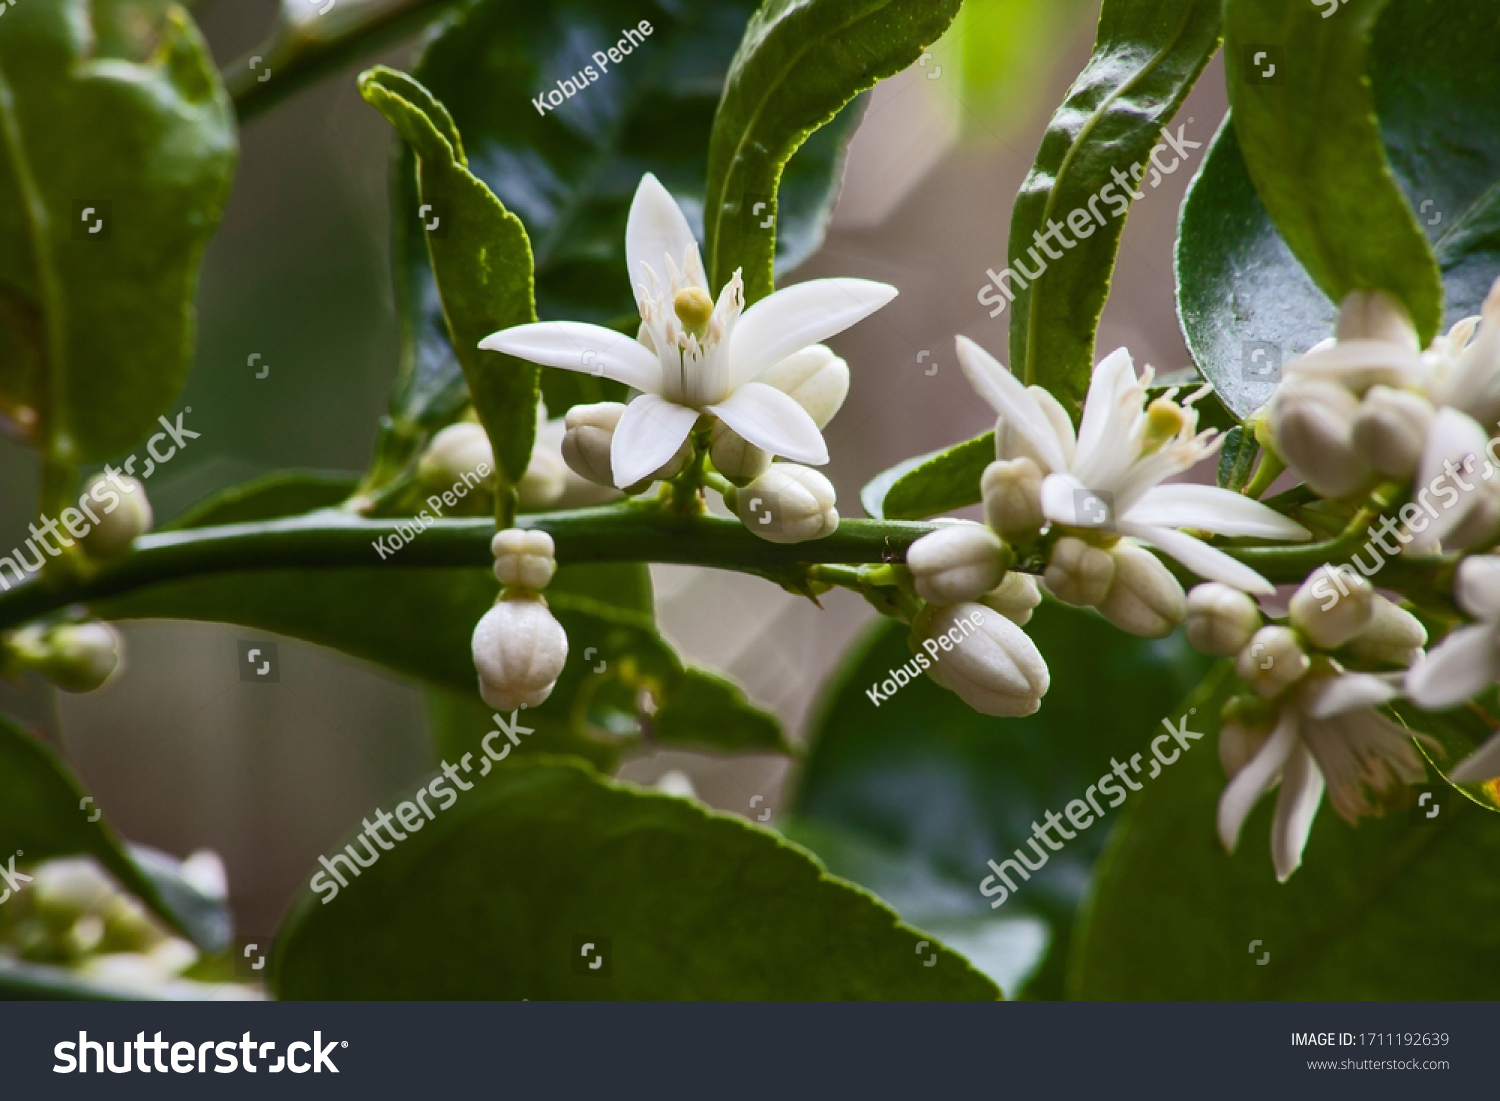 Flowers of the Olive tree (Olea europea) promises a good harvest. #1711192639